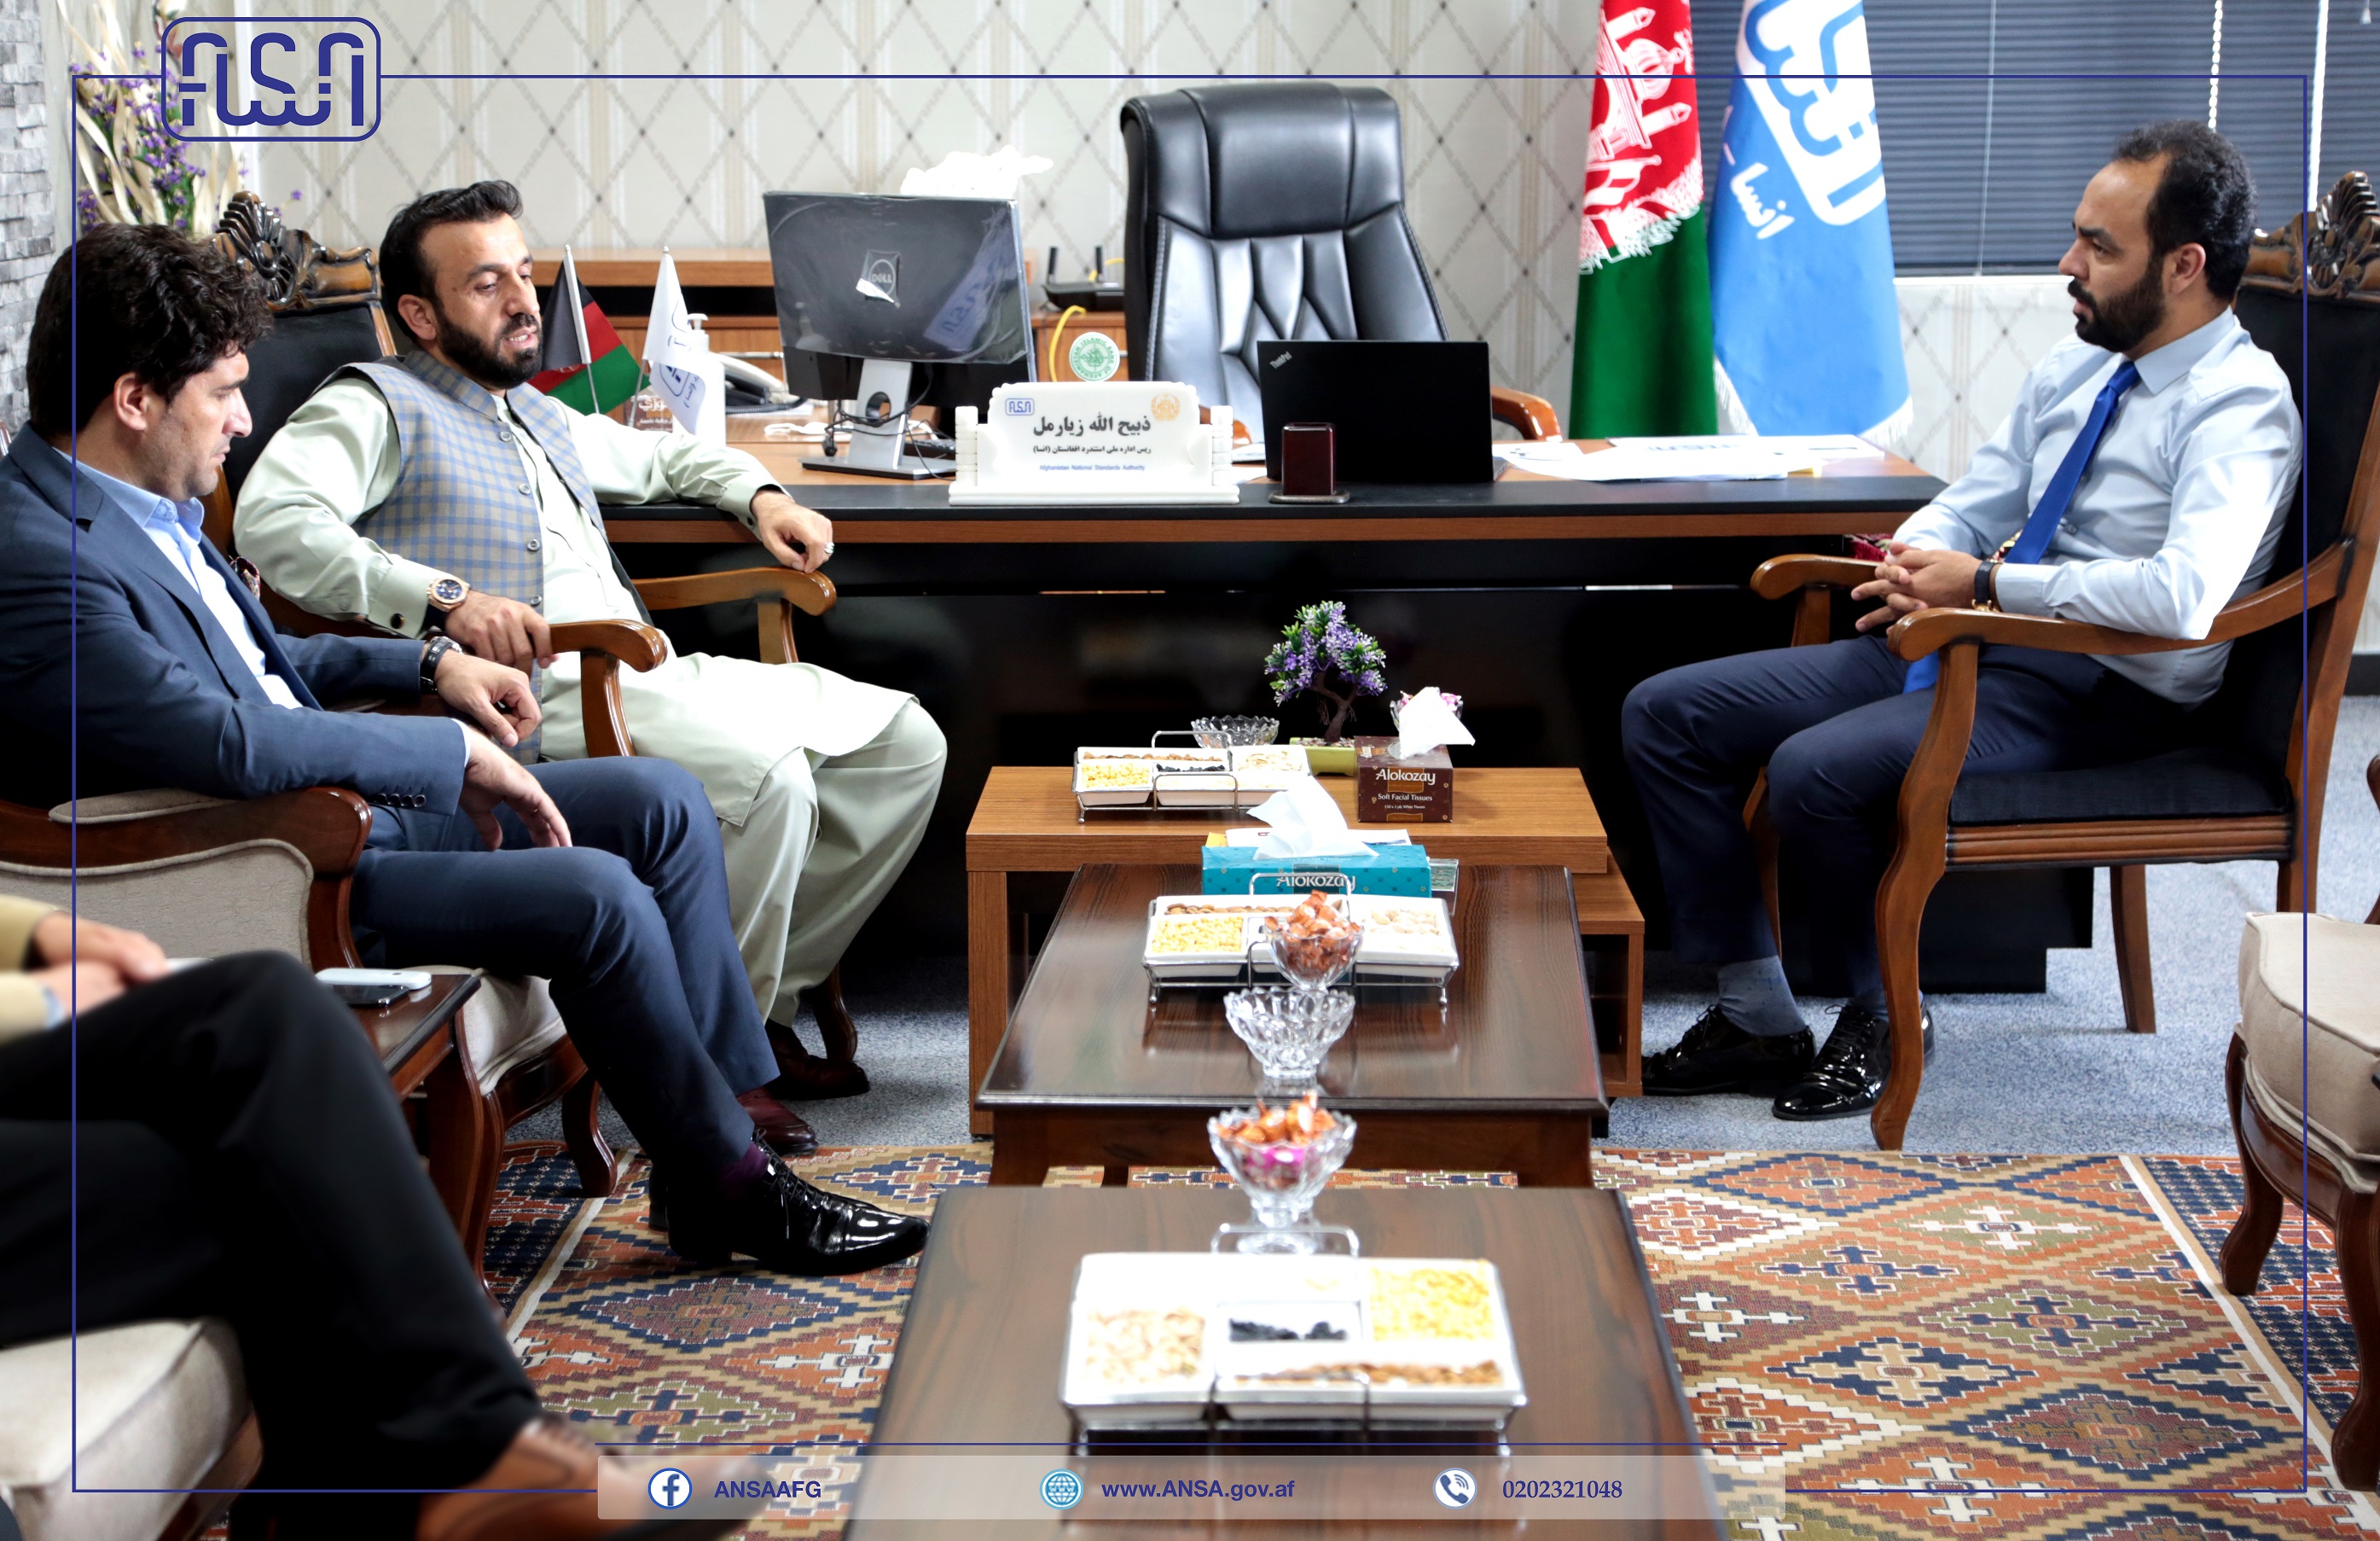 رئیس عمومی اداره ملی ستندرد با رئیس کمیسیون امور داخلی و امنیت ملی مجلس نمایندگان دیدار کرد.